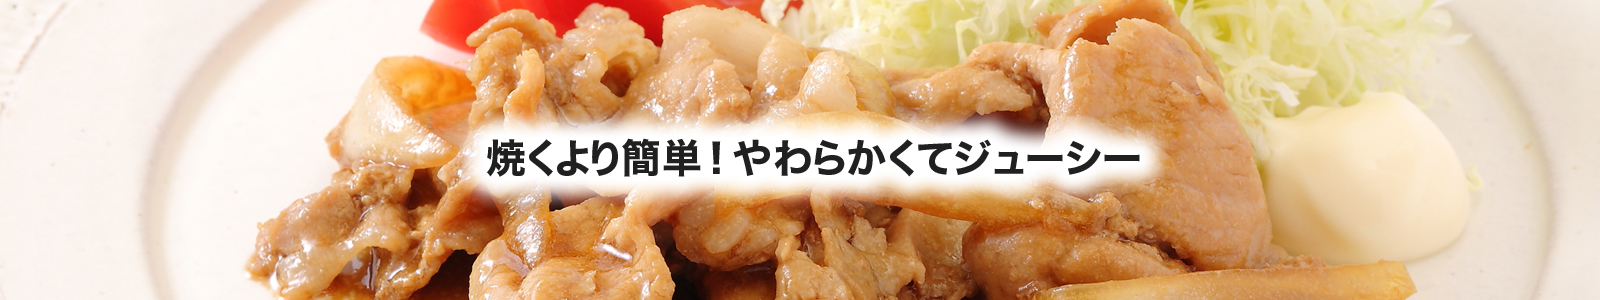 【湯煎調理レシピ】豚の生姜焼き